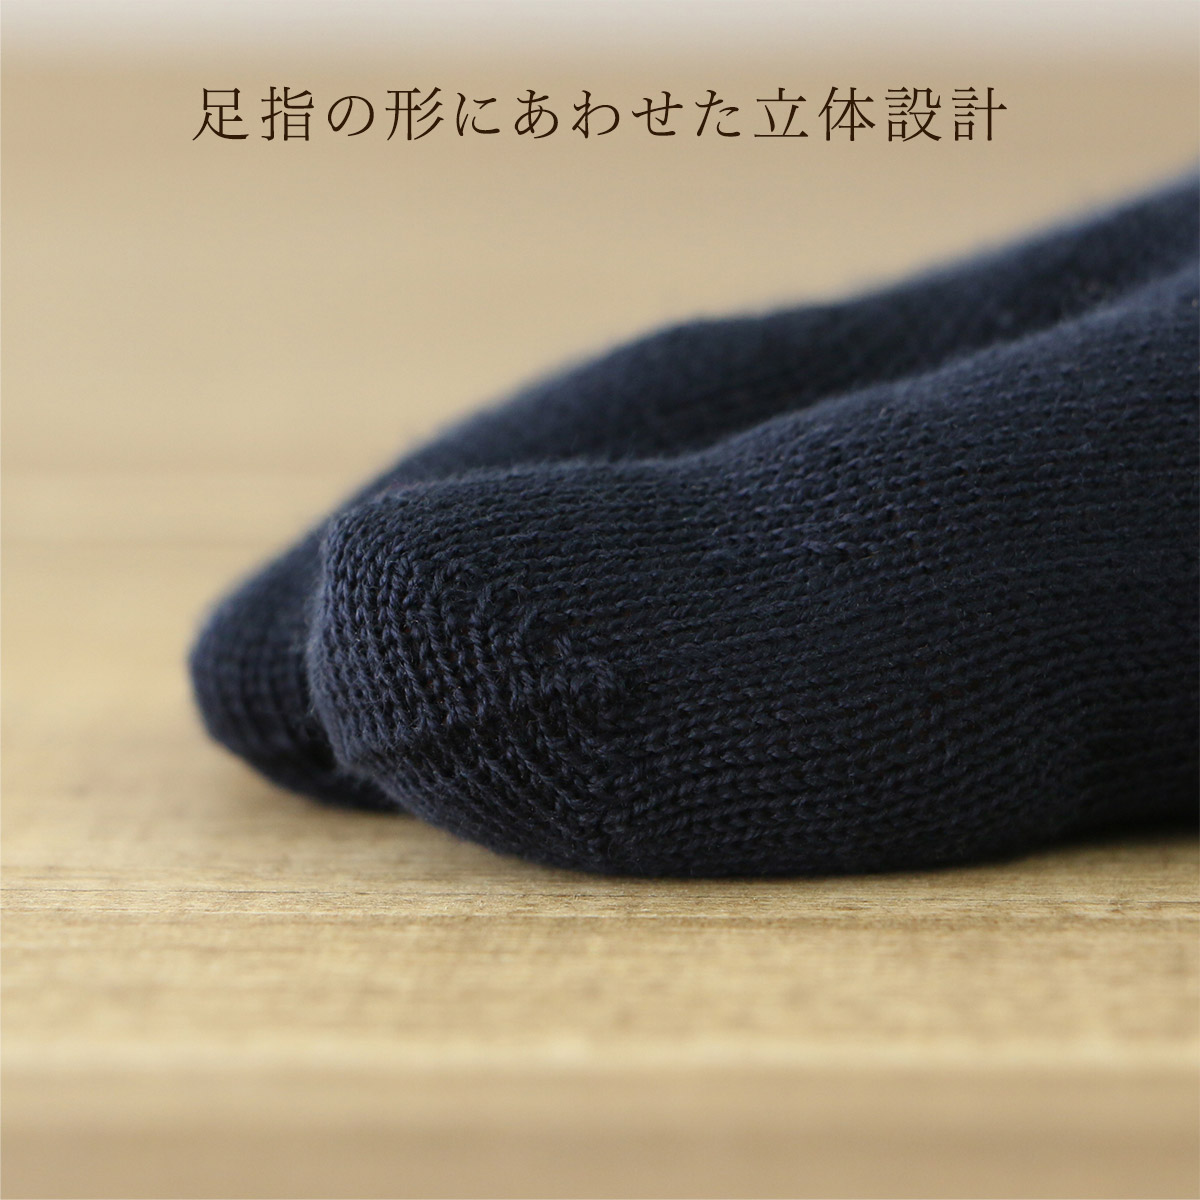 日本製 綿100% 5本指 親指セパレート ホールガーメント クルー丈 メンズ 無地 ソックス